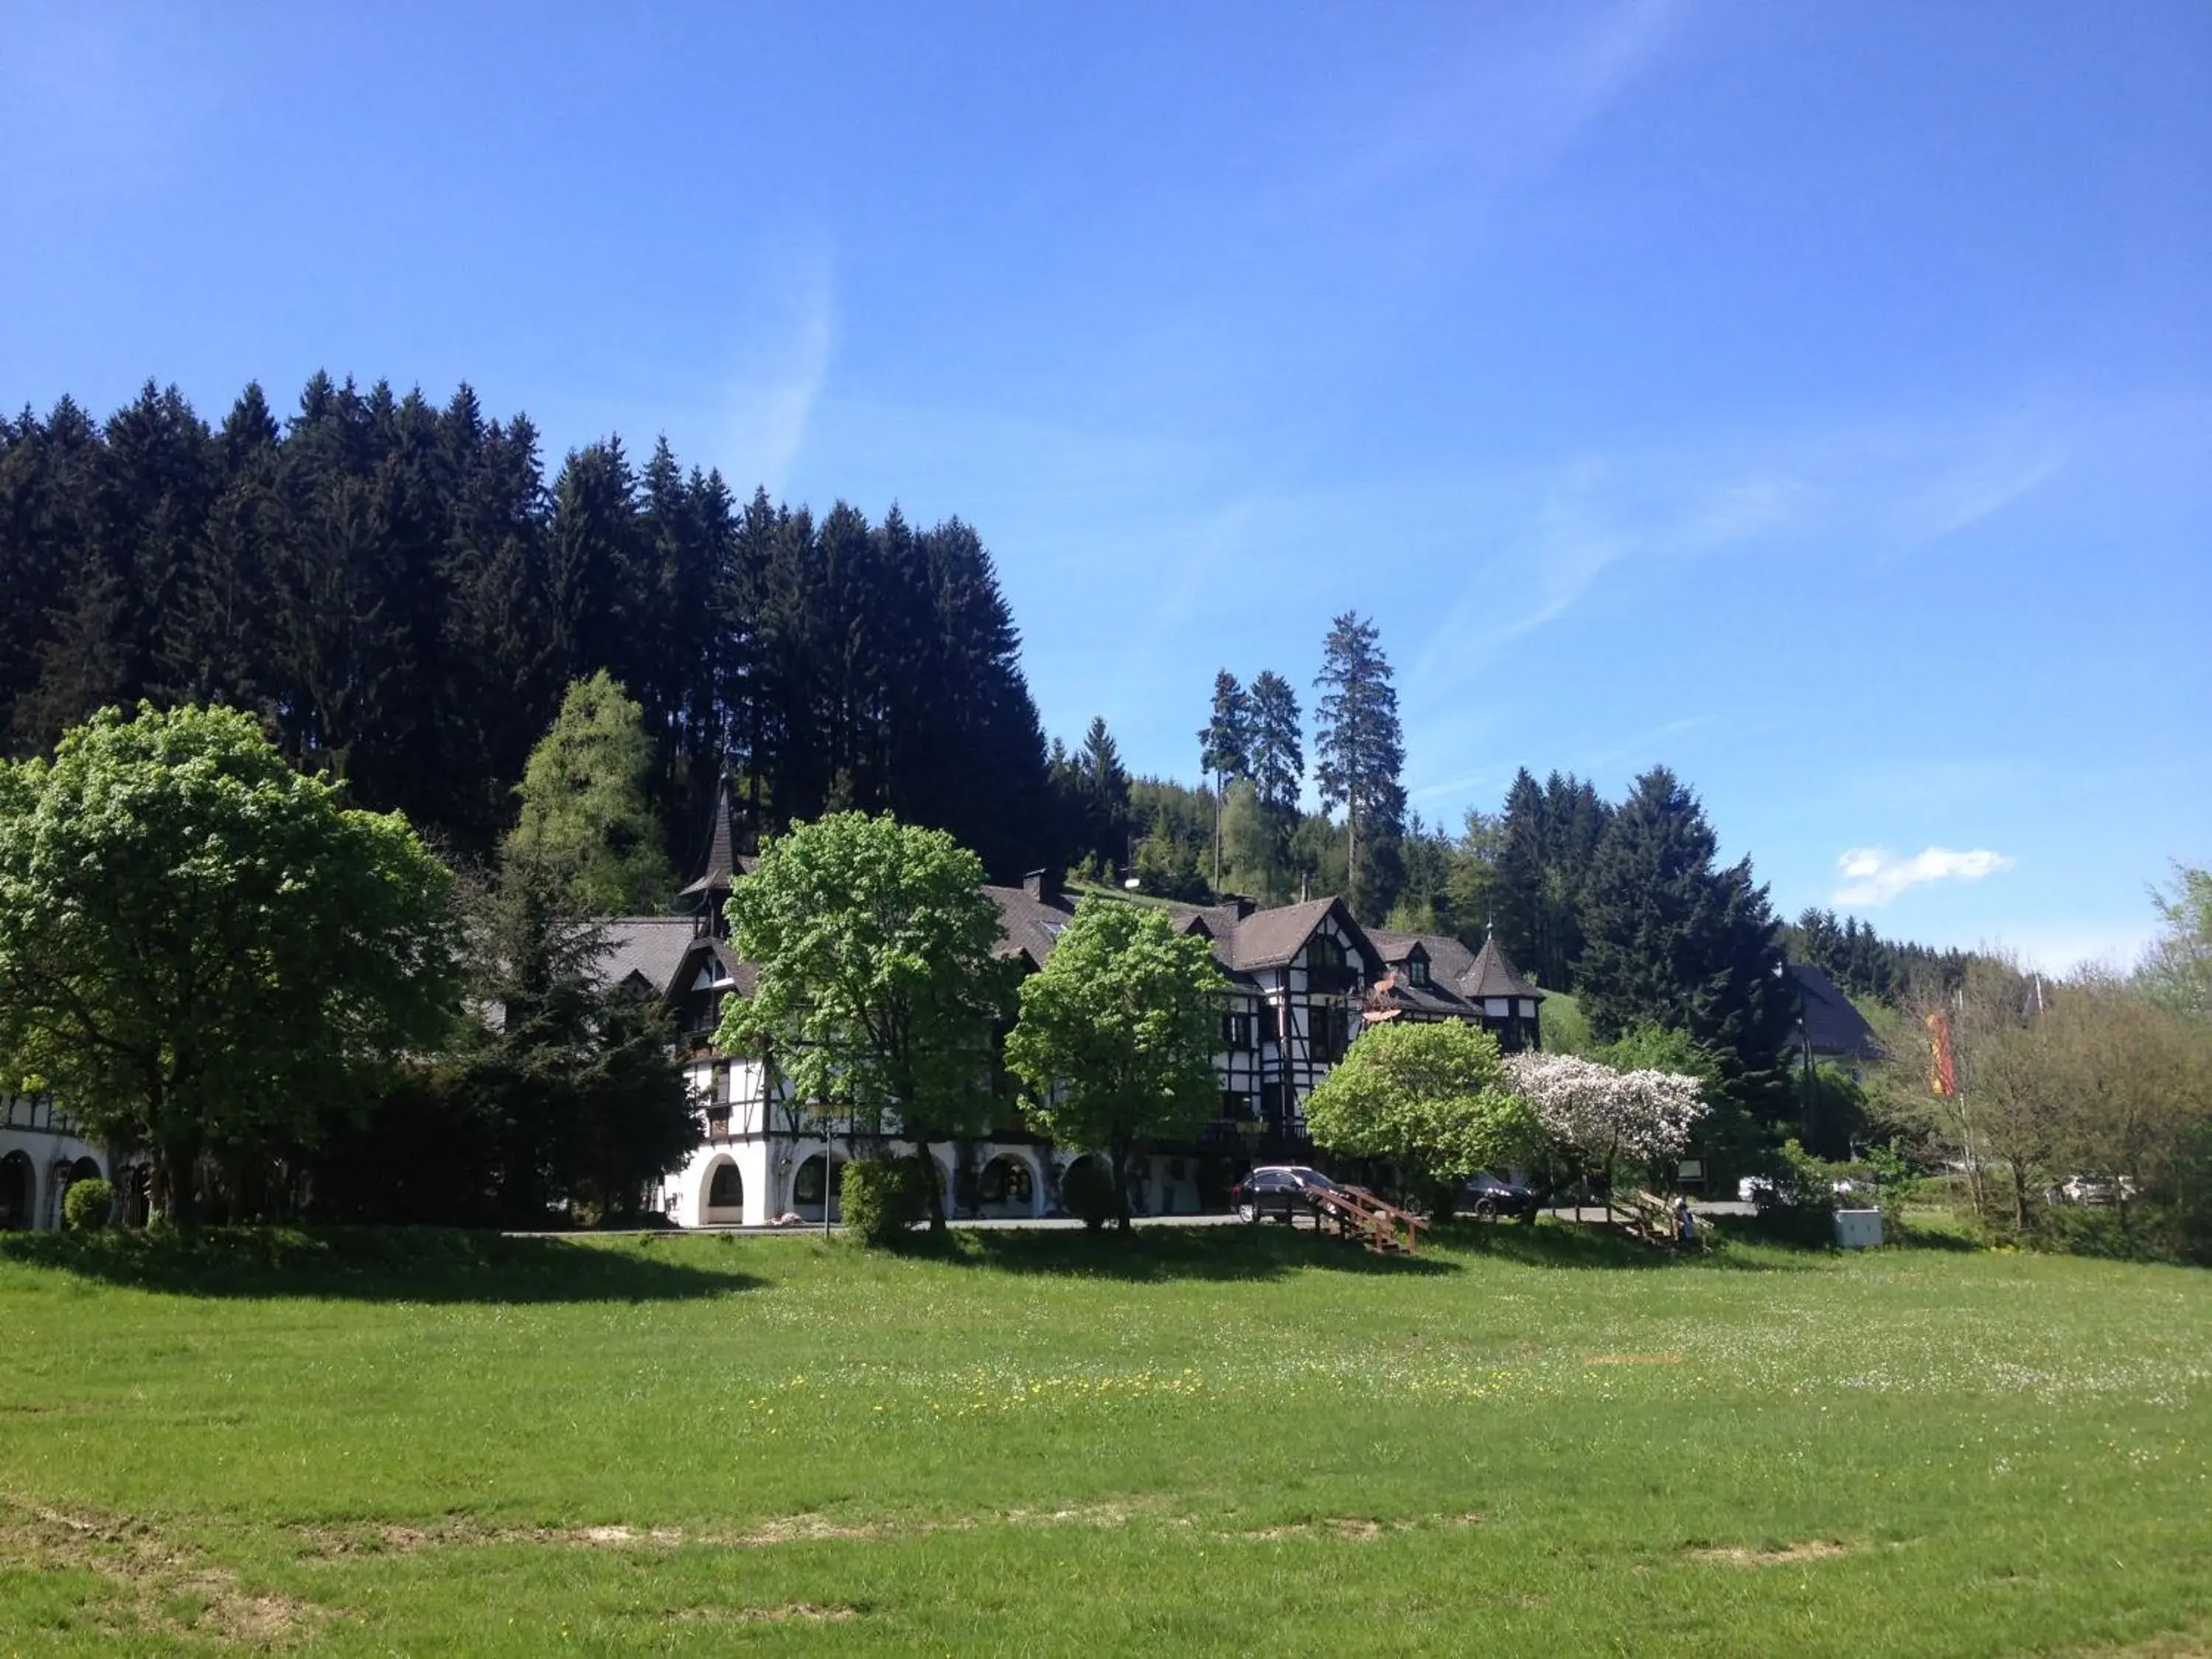 Property building, Garden in Relais & Châteaux Jagdhof Glashütte